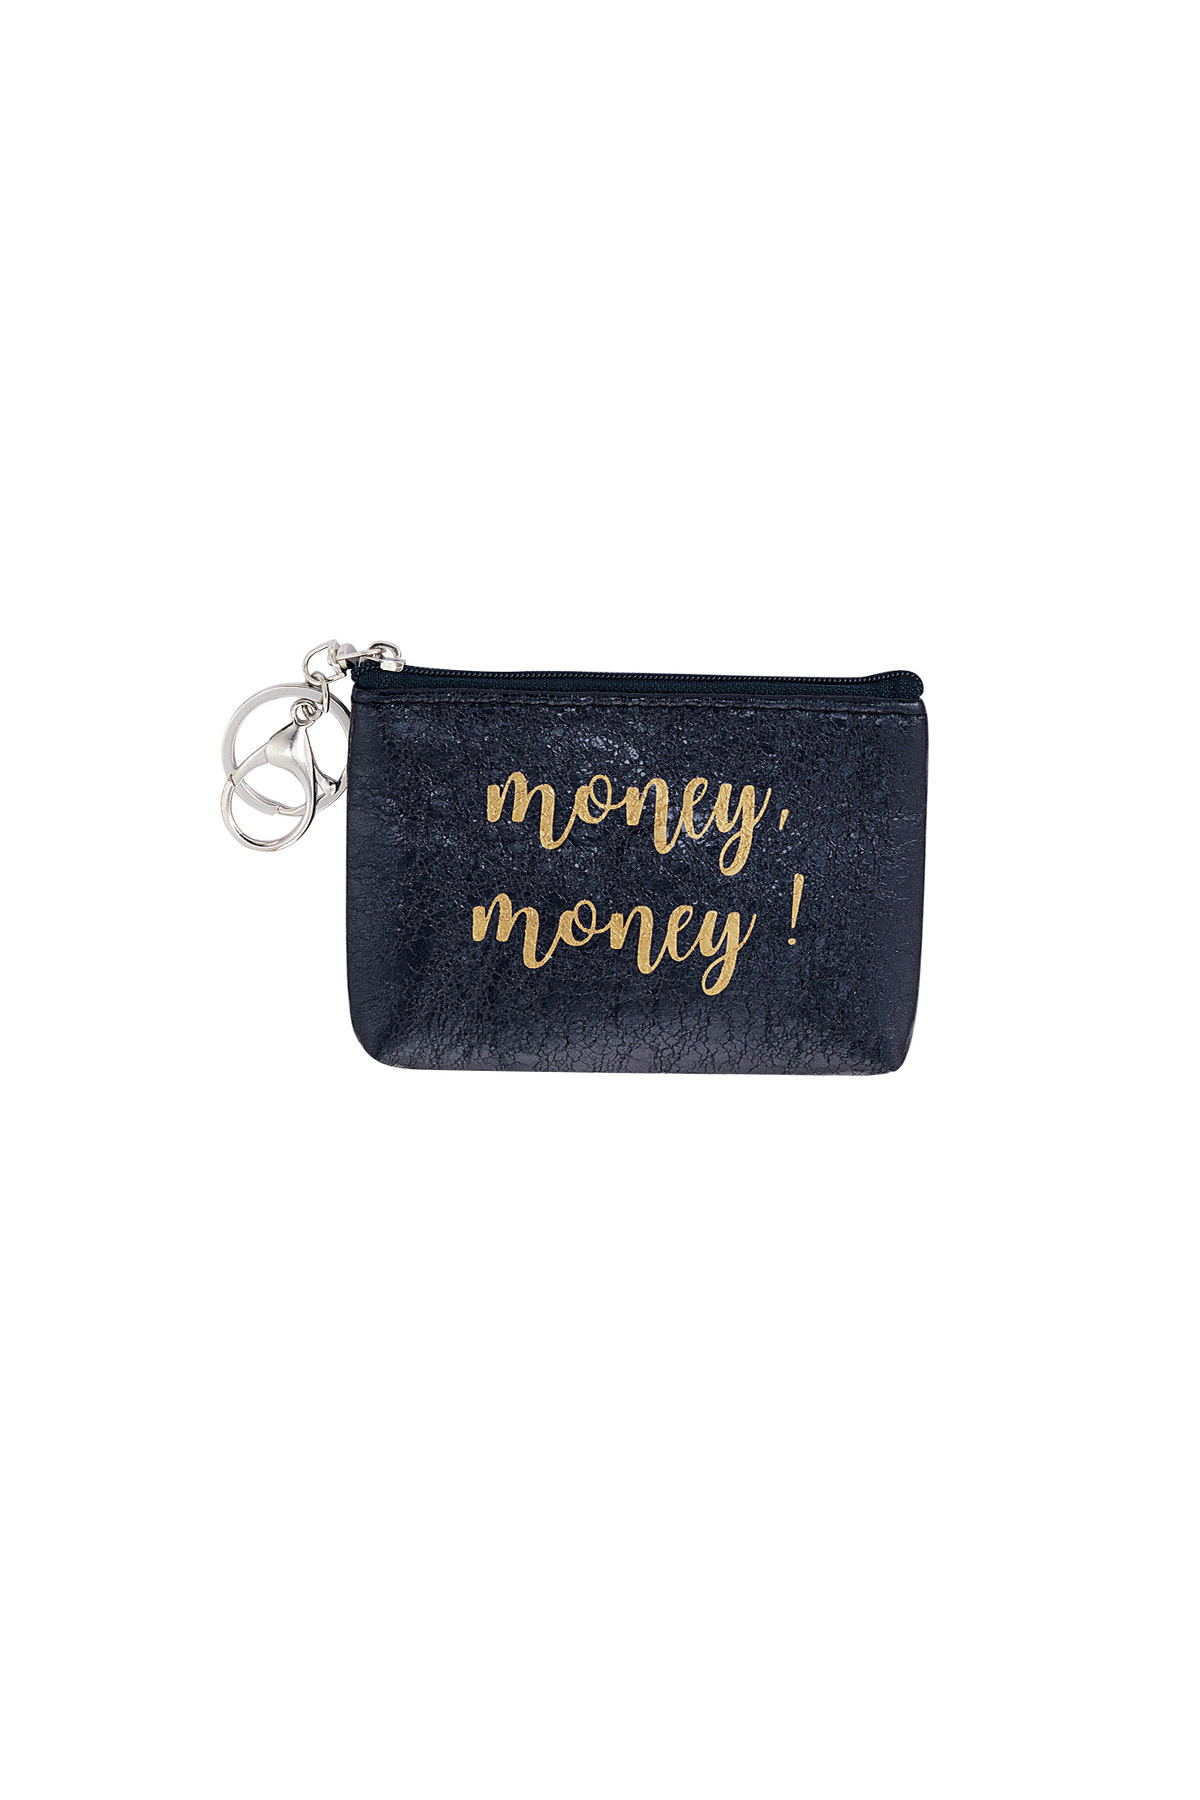 Keychain wallet metallic money money - black h5 